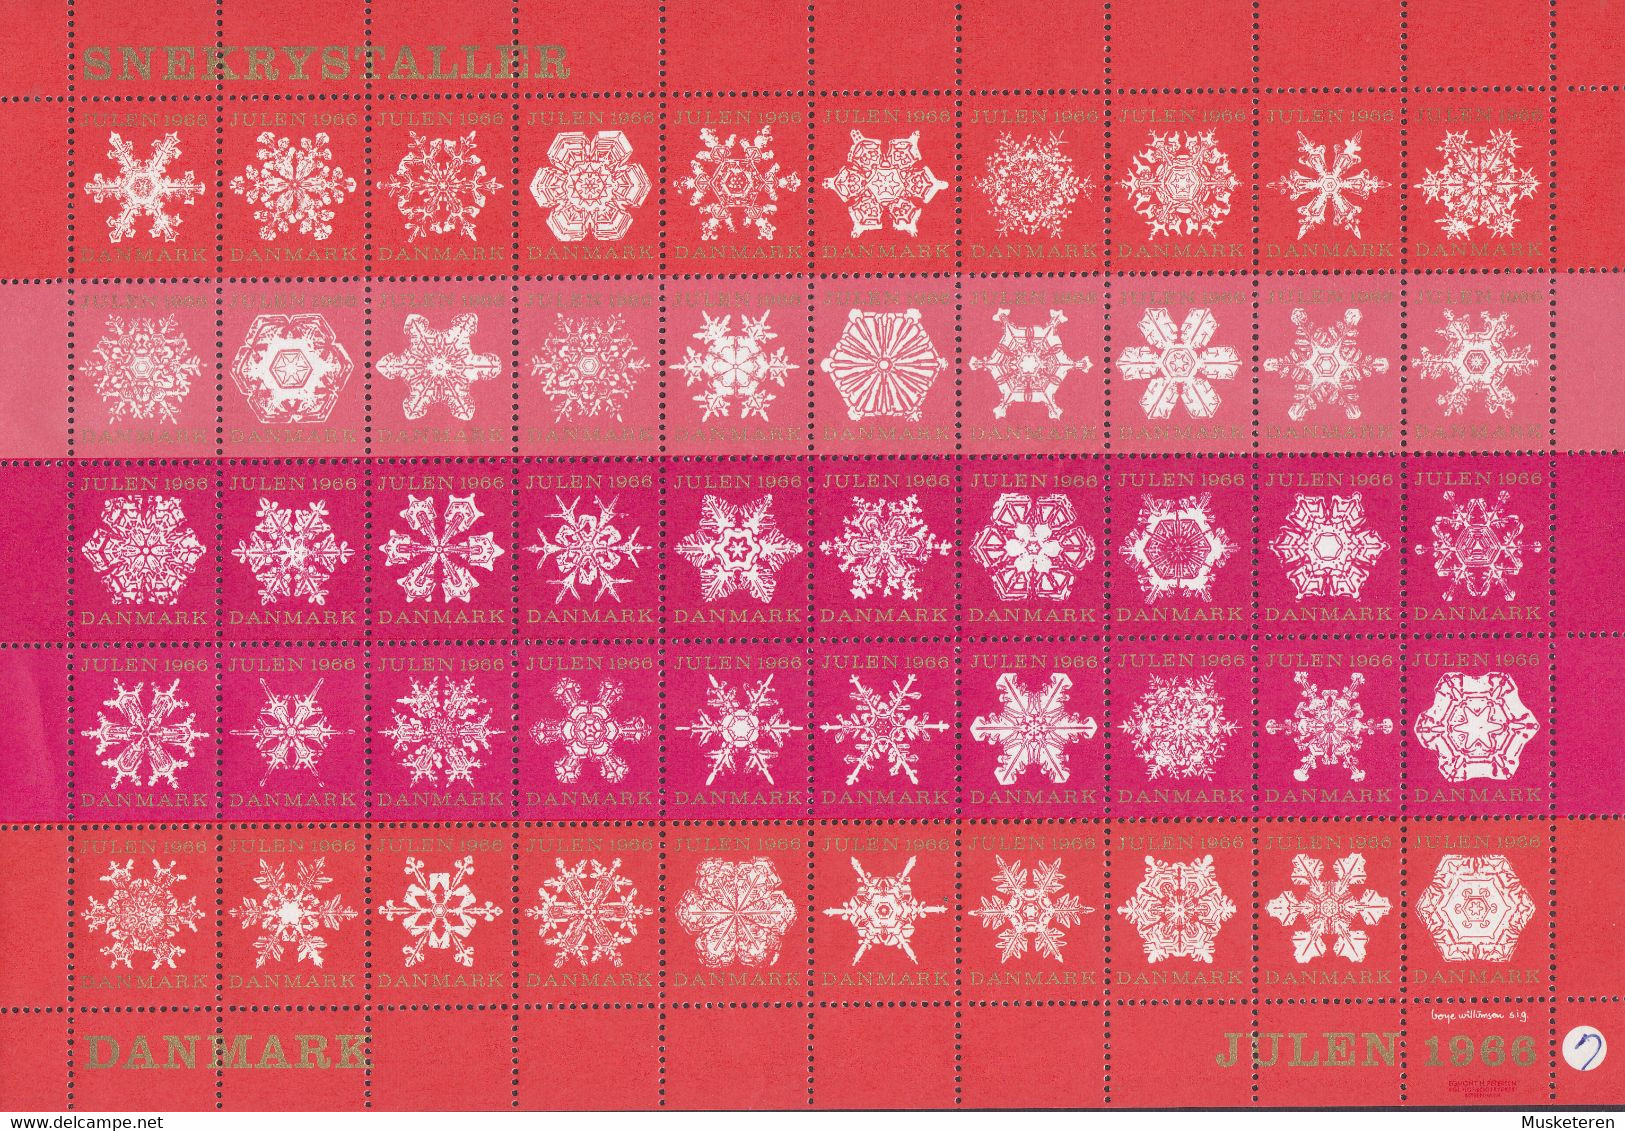 Denmark Christmas Seal Full Sheet 1966 MNH** - Full Sheets & Multiples